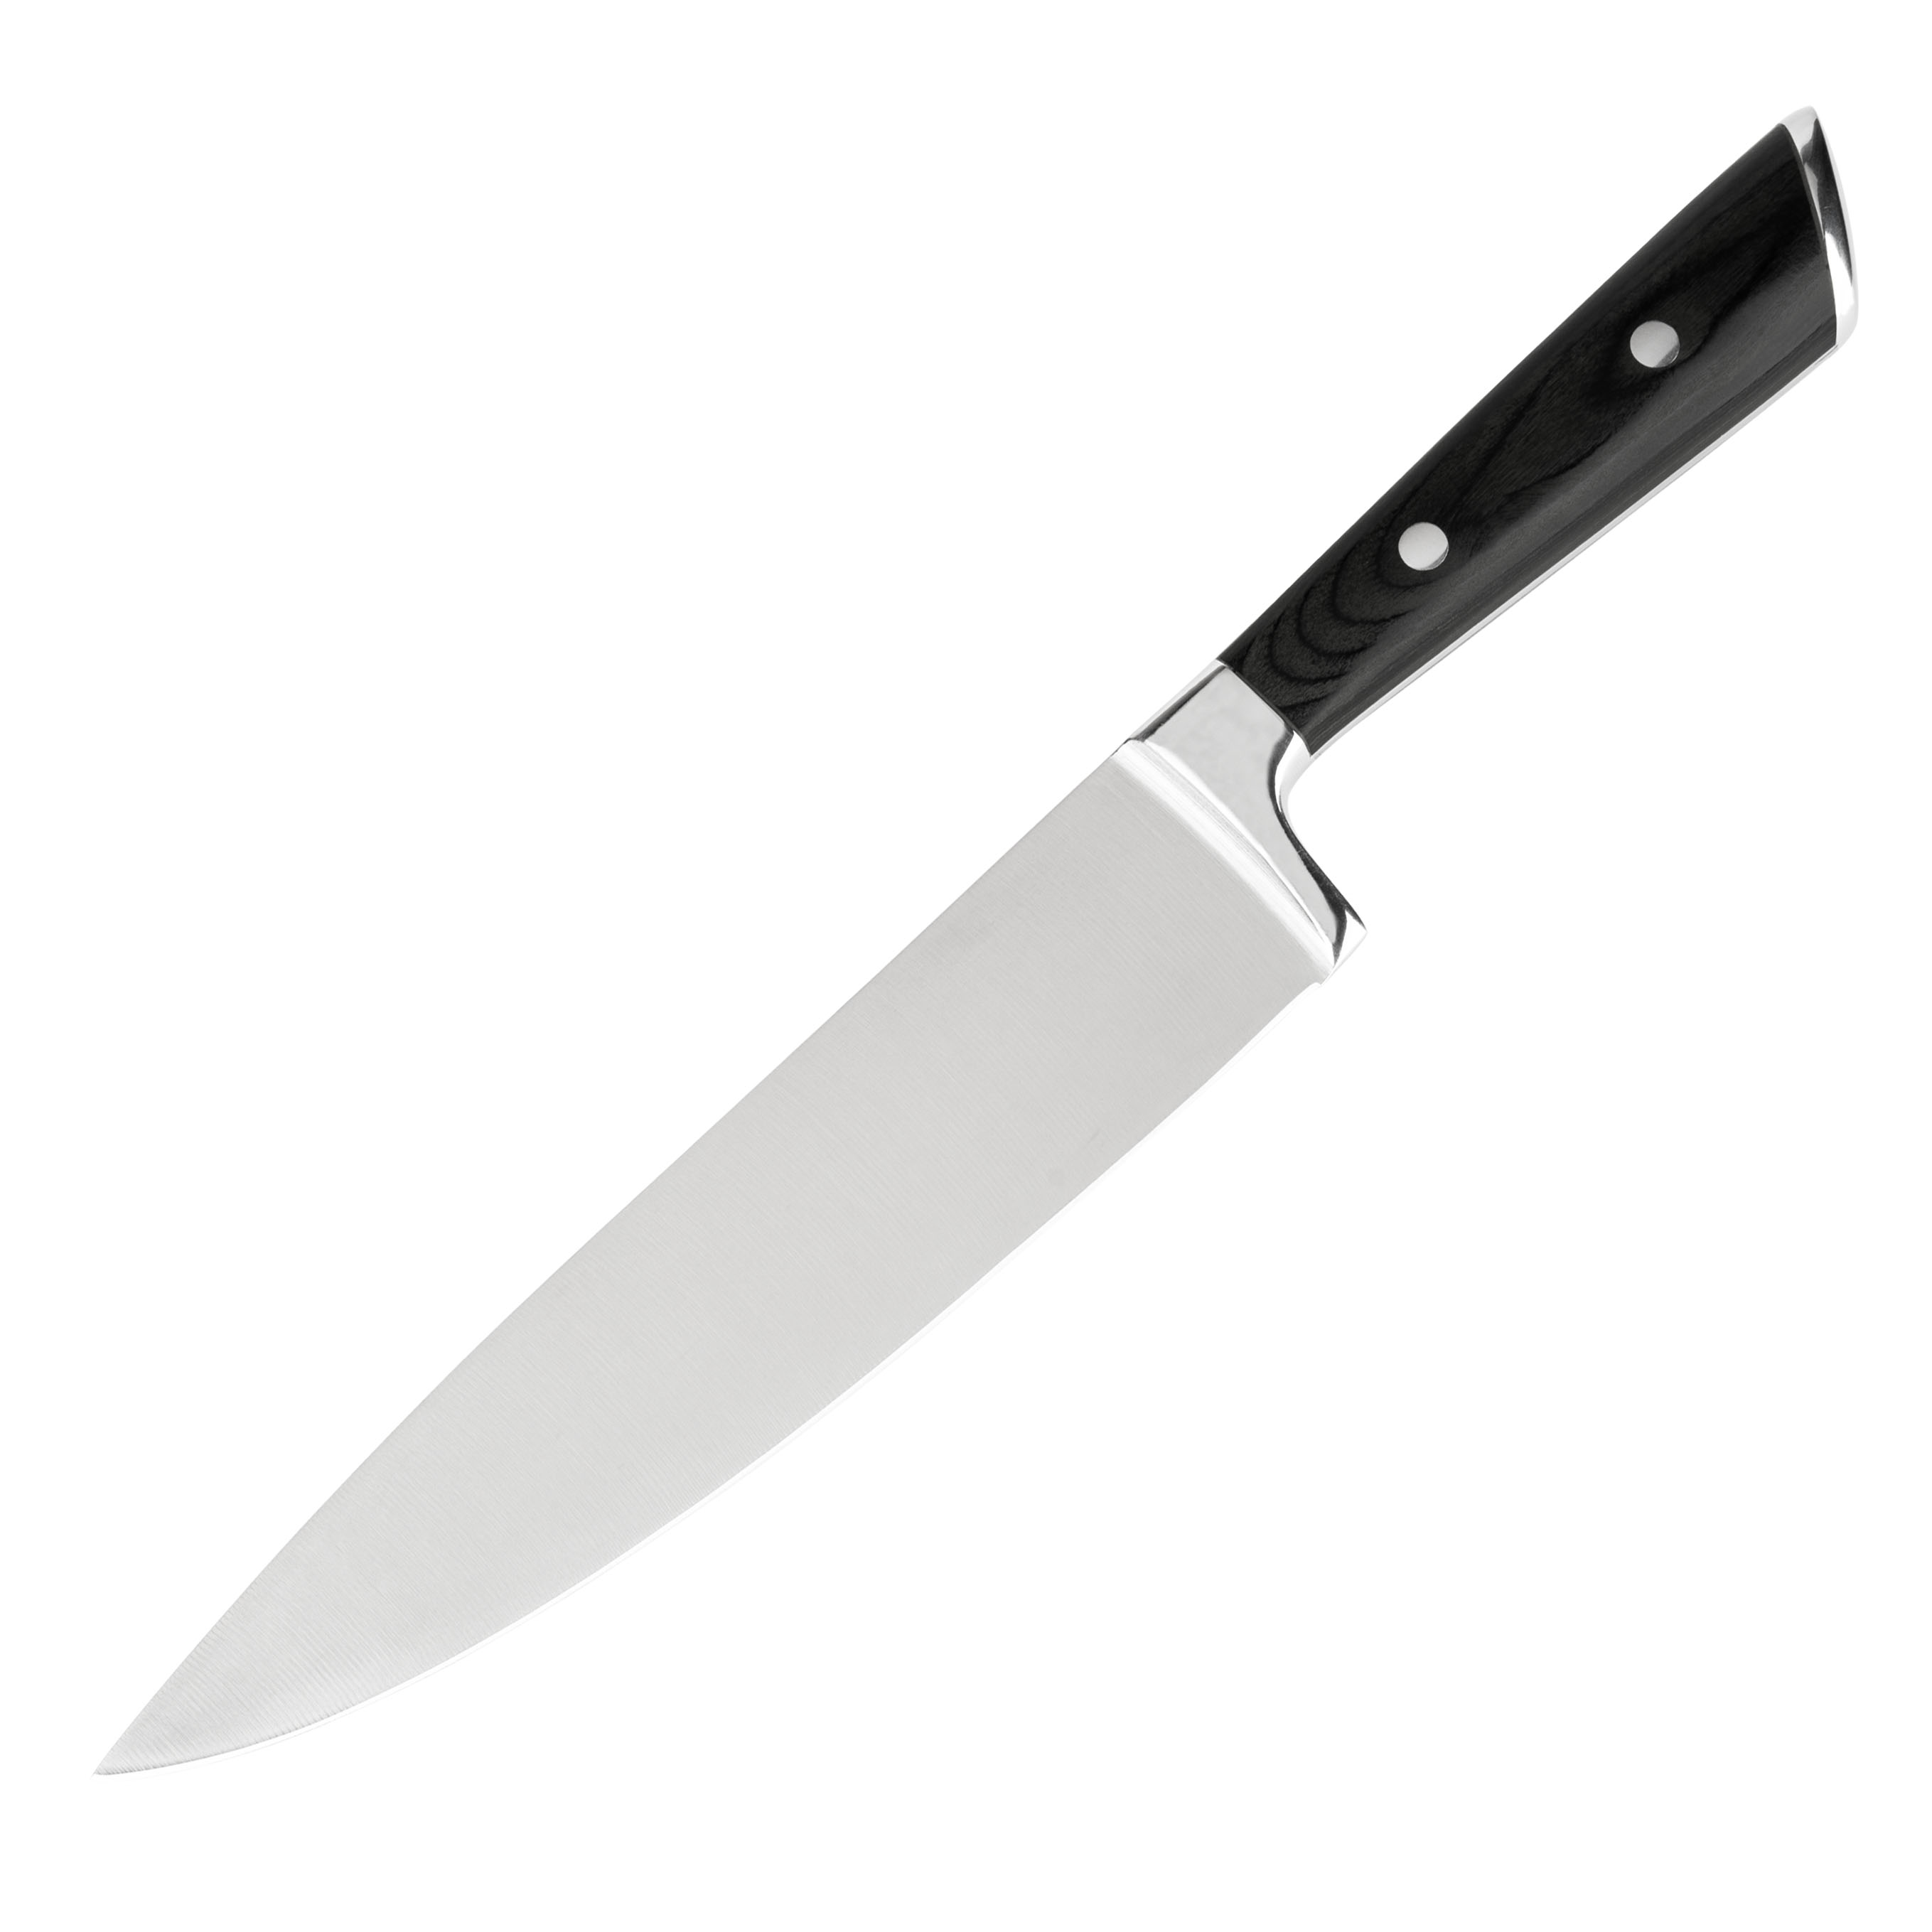 8" Pakkawood Chef Knife